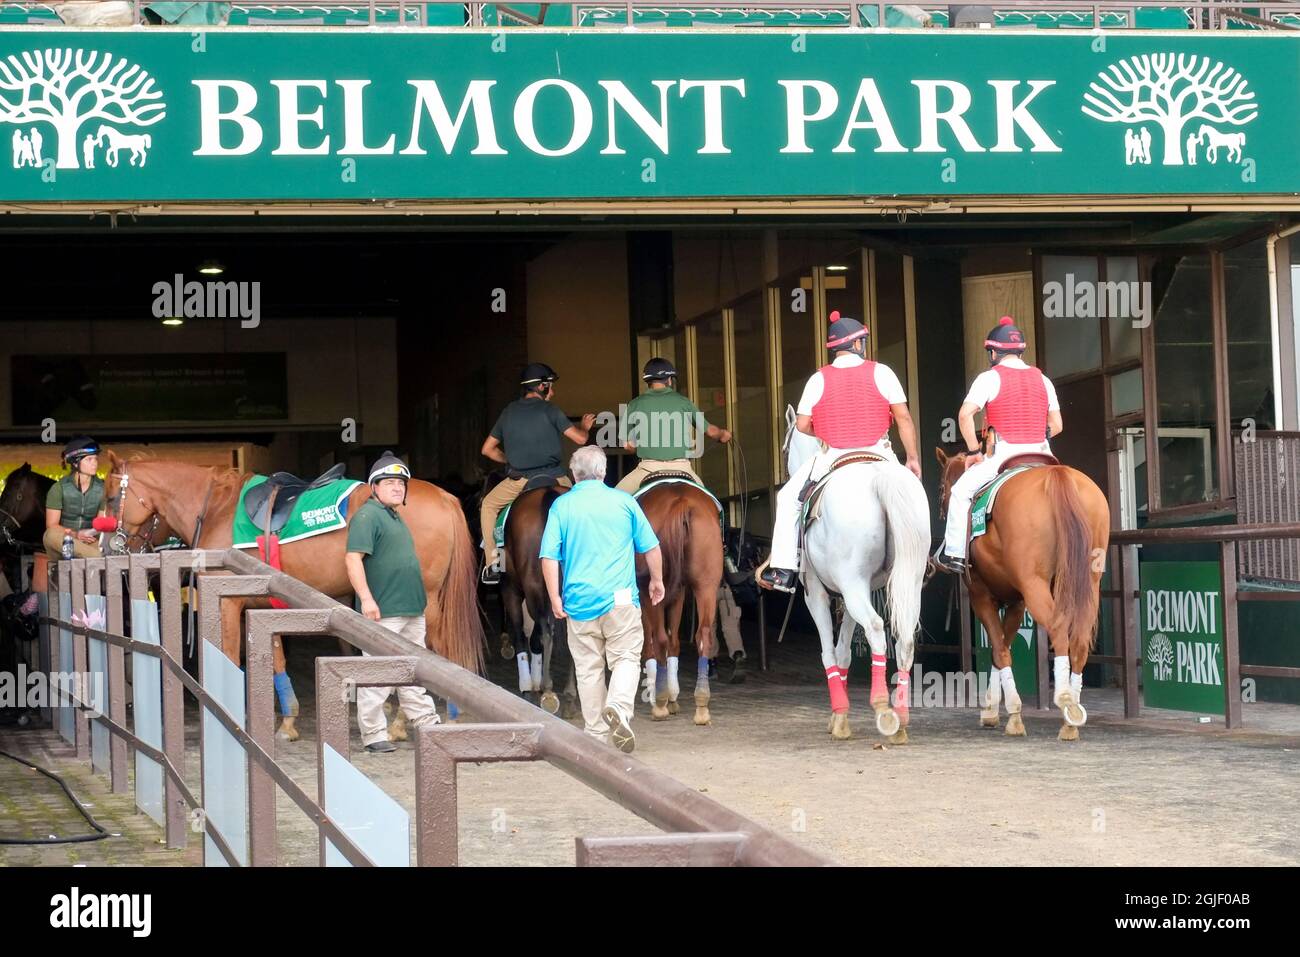 Corse di cavalli a Belmont Park, New York (solo per uso editoriale) Foto Stock